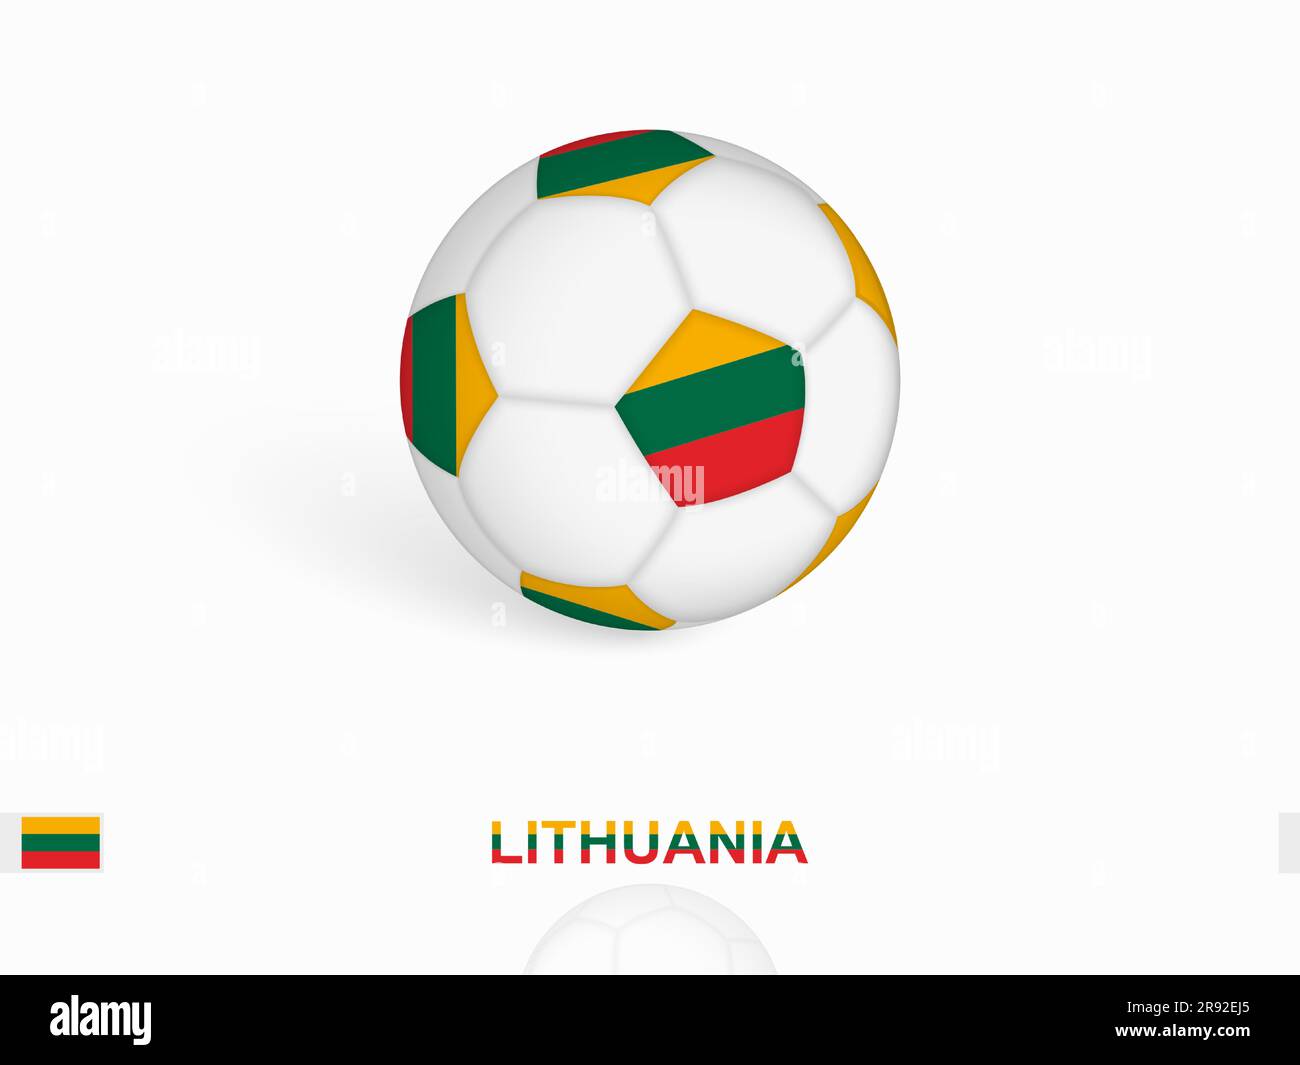 Pallone da calcio con bandiera lituana, attrezzature sportive da calcio. Illustrazione vettoriale. Illustrazione Vettoriale